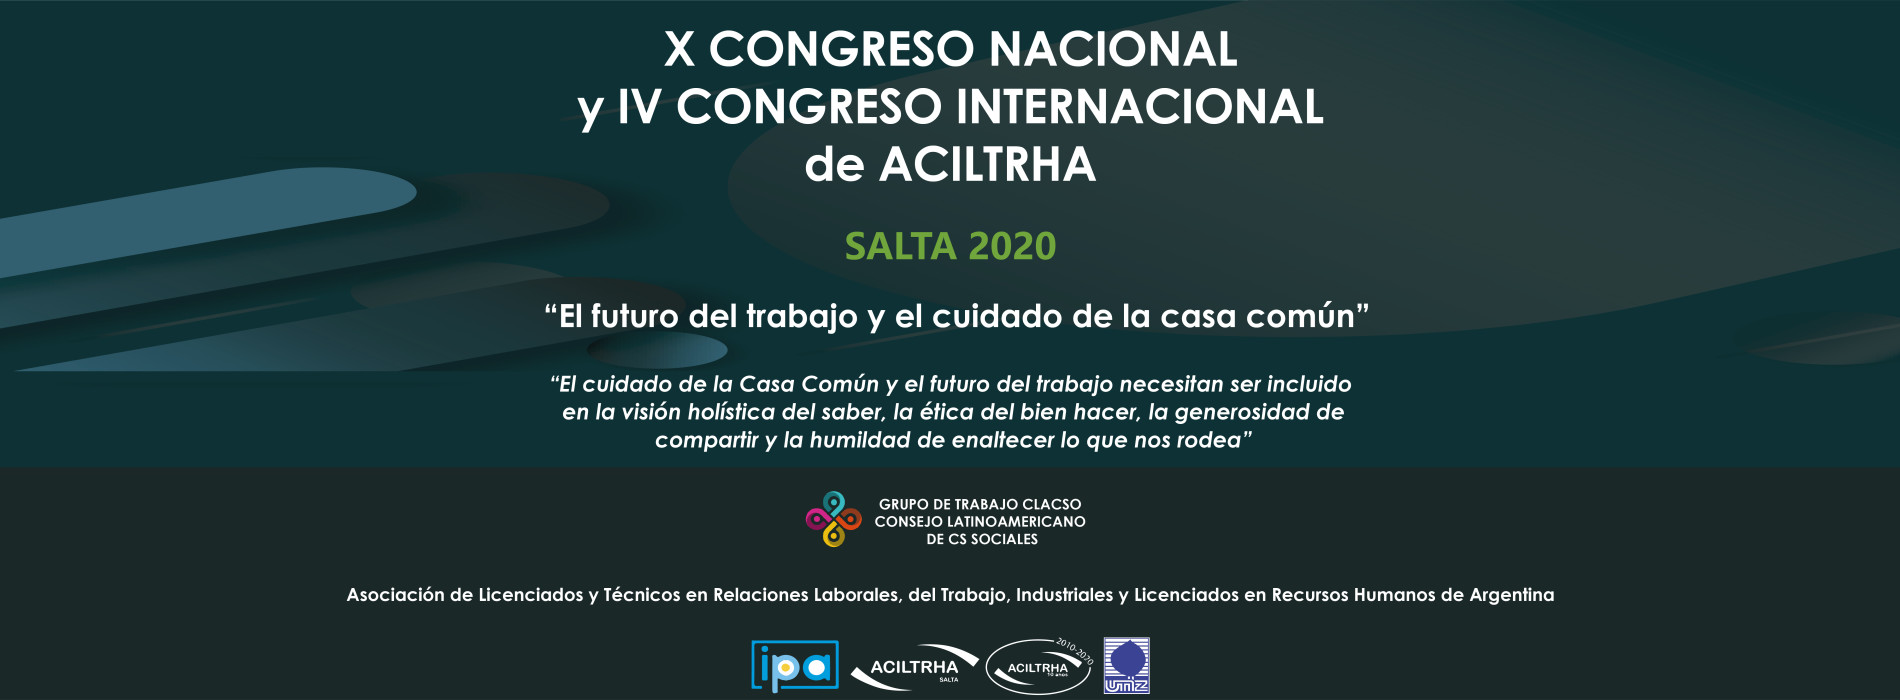 X Congreso Nacional y IV Congreso Internacional de ACILTRHA 2020